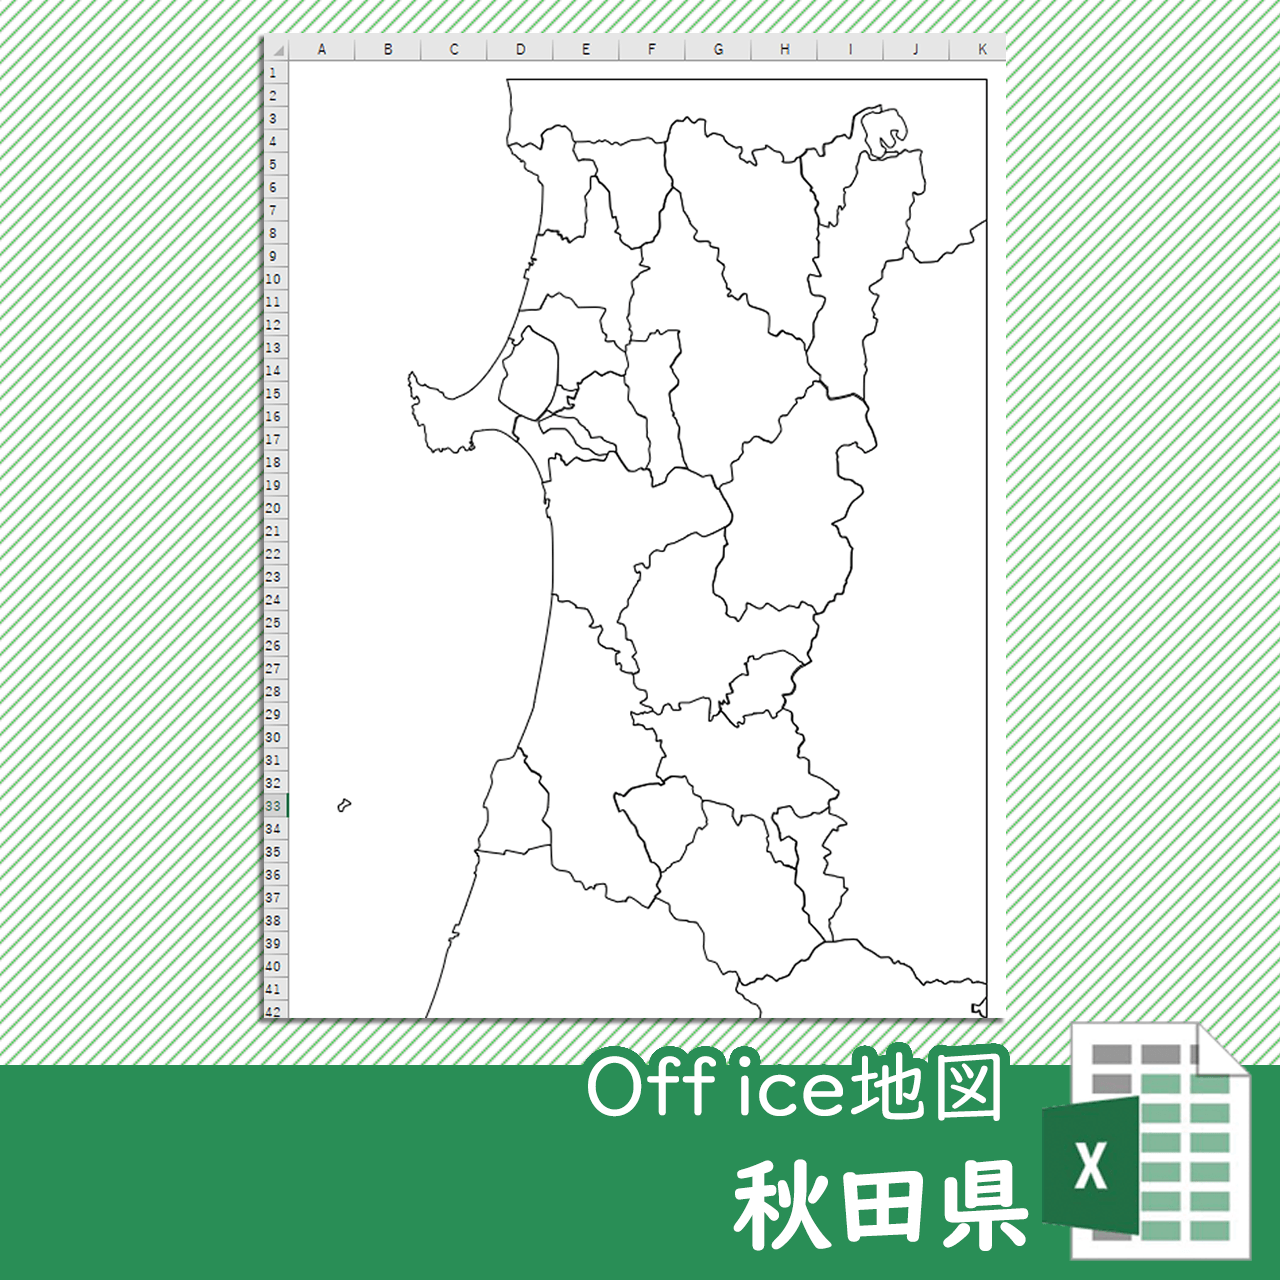 秋田県のOffice地図のサムネイル